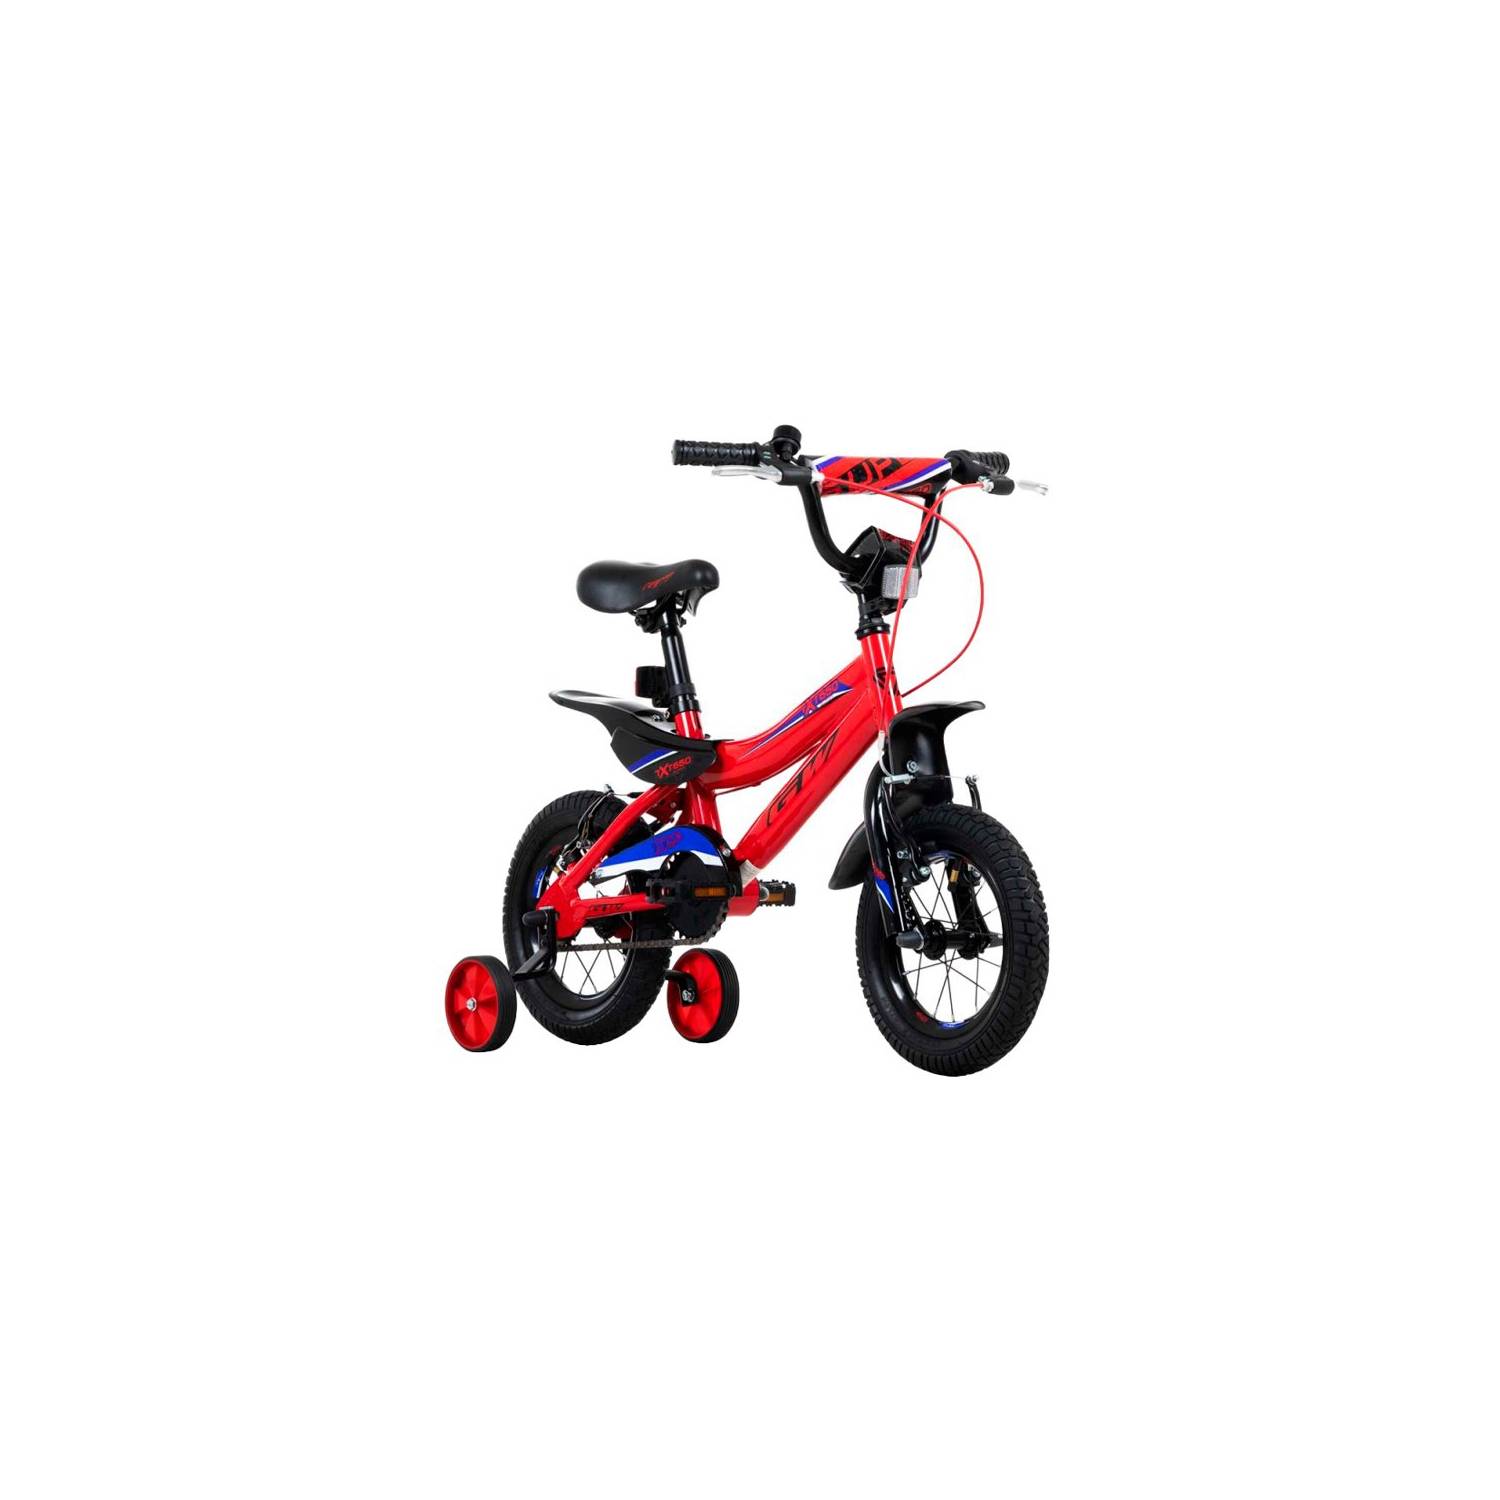 Bicicleta para niños rin 12 Gw TXT-650 - Tienda de Bicicletas Wuilpy Bike